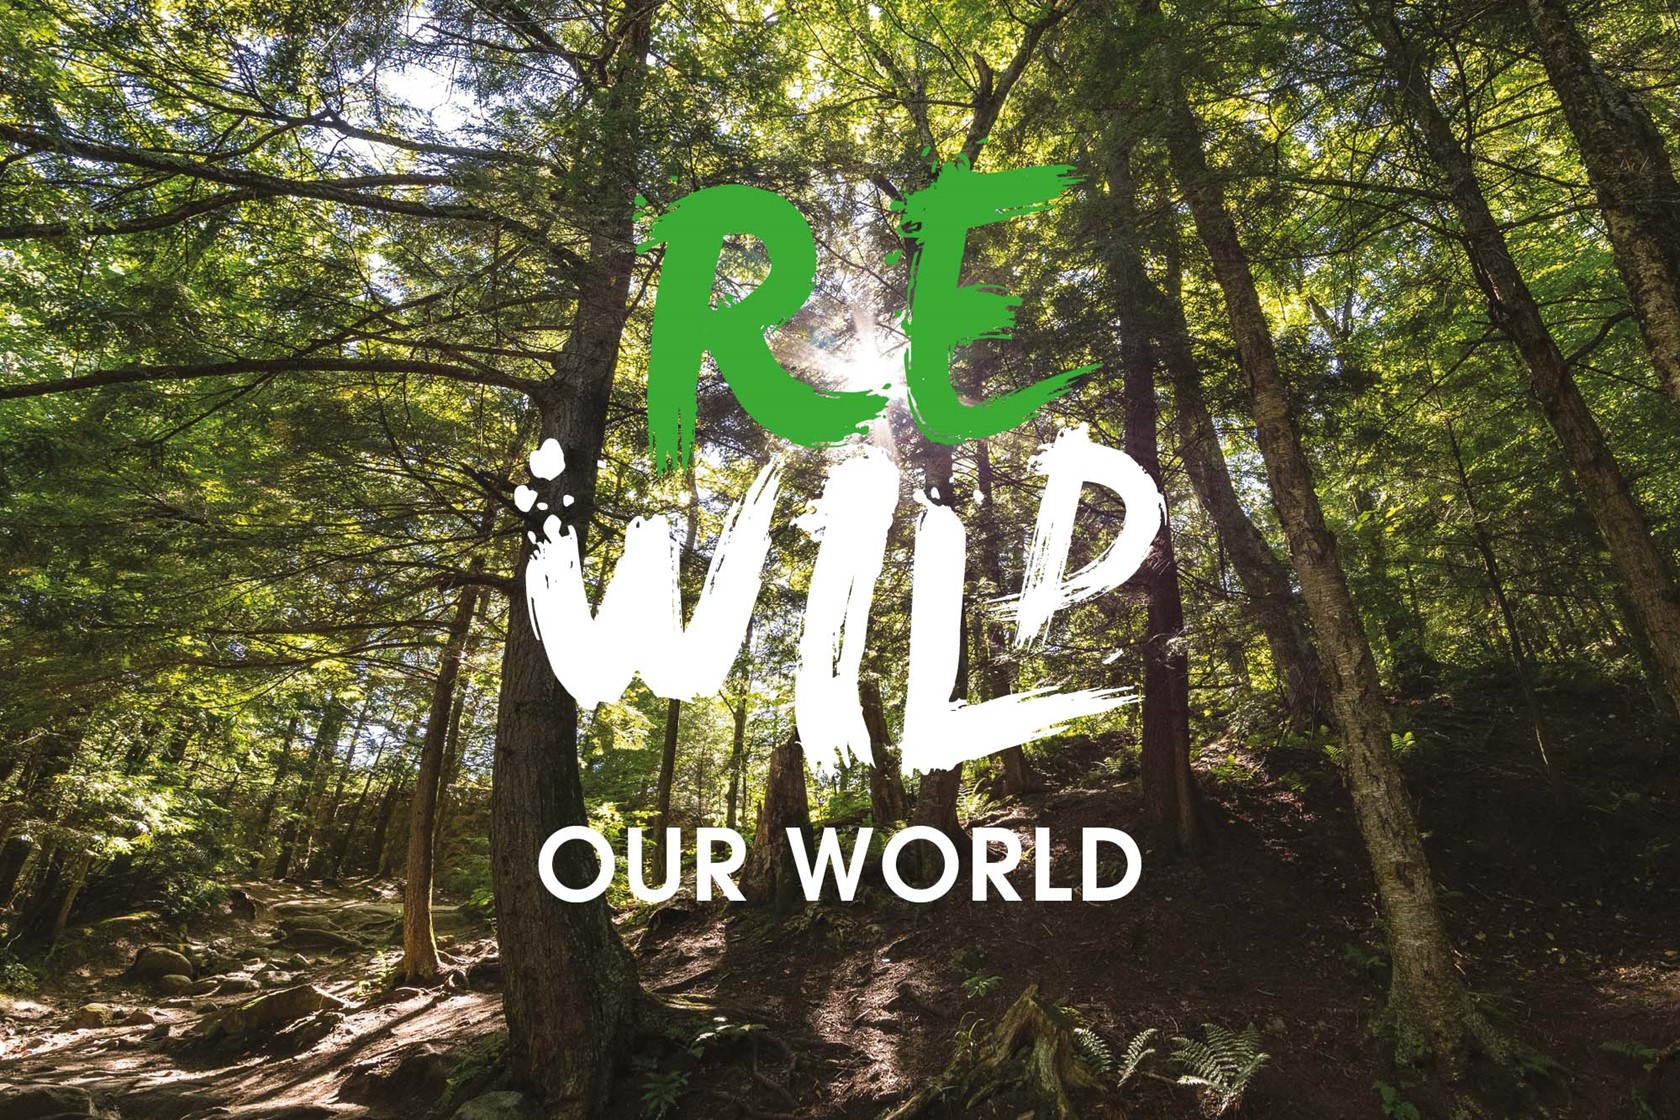 Rewild Our World